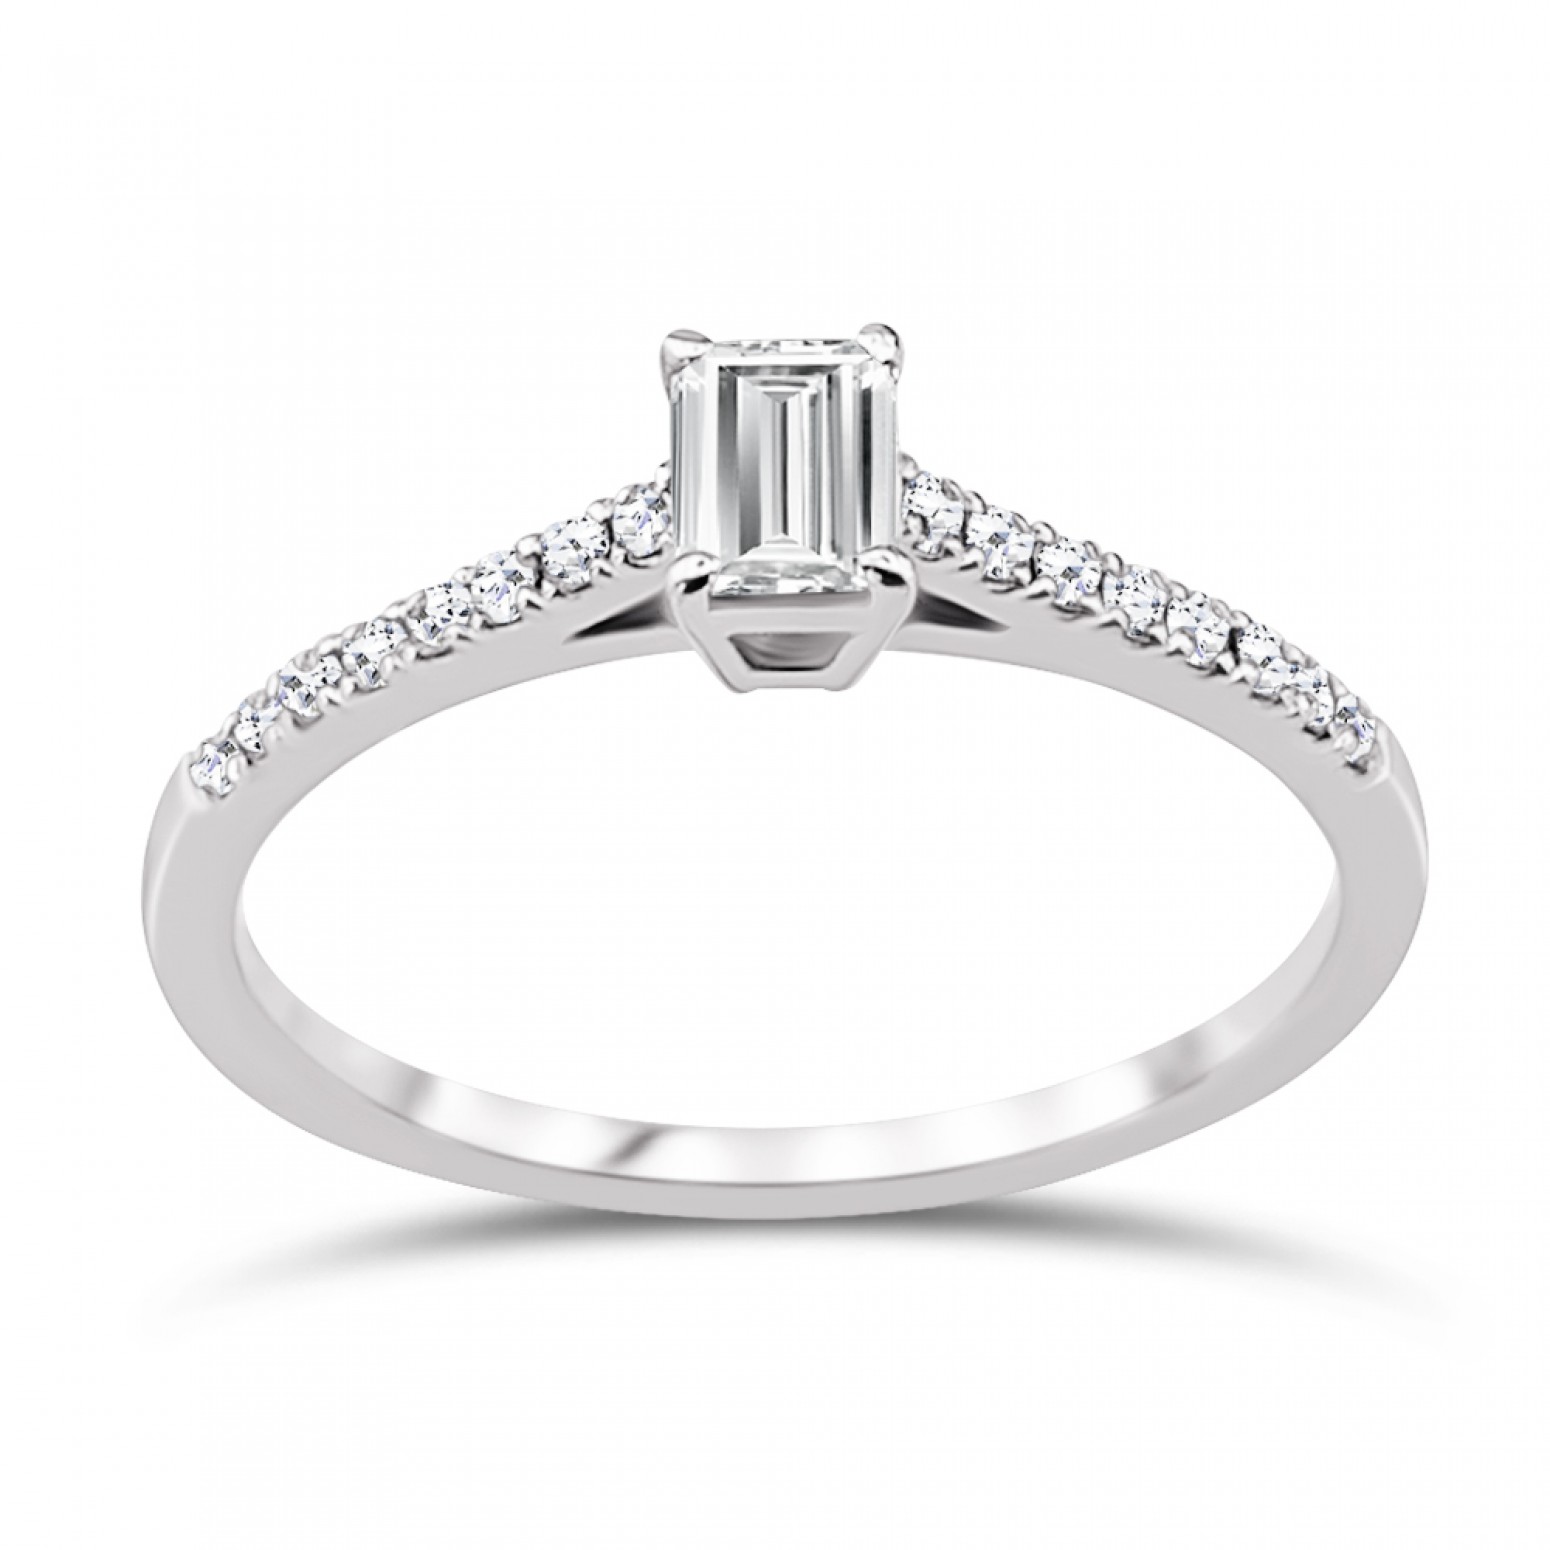 Solitaire ring 18K white gold with center diamond 0.31ct, VVS1, E from IGL da3609 ENGAGEMENT RINGS Κοσμηματα - chrilia.gr